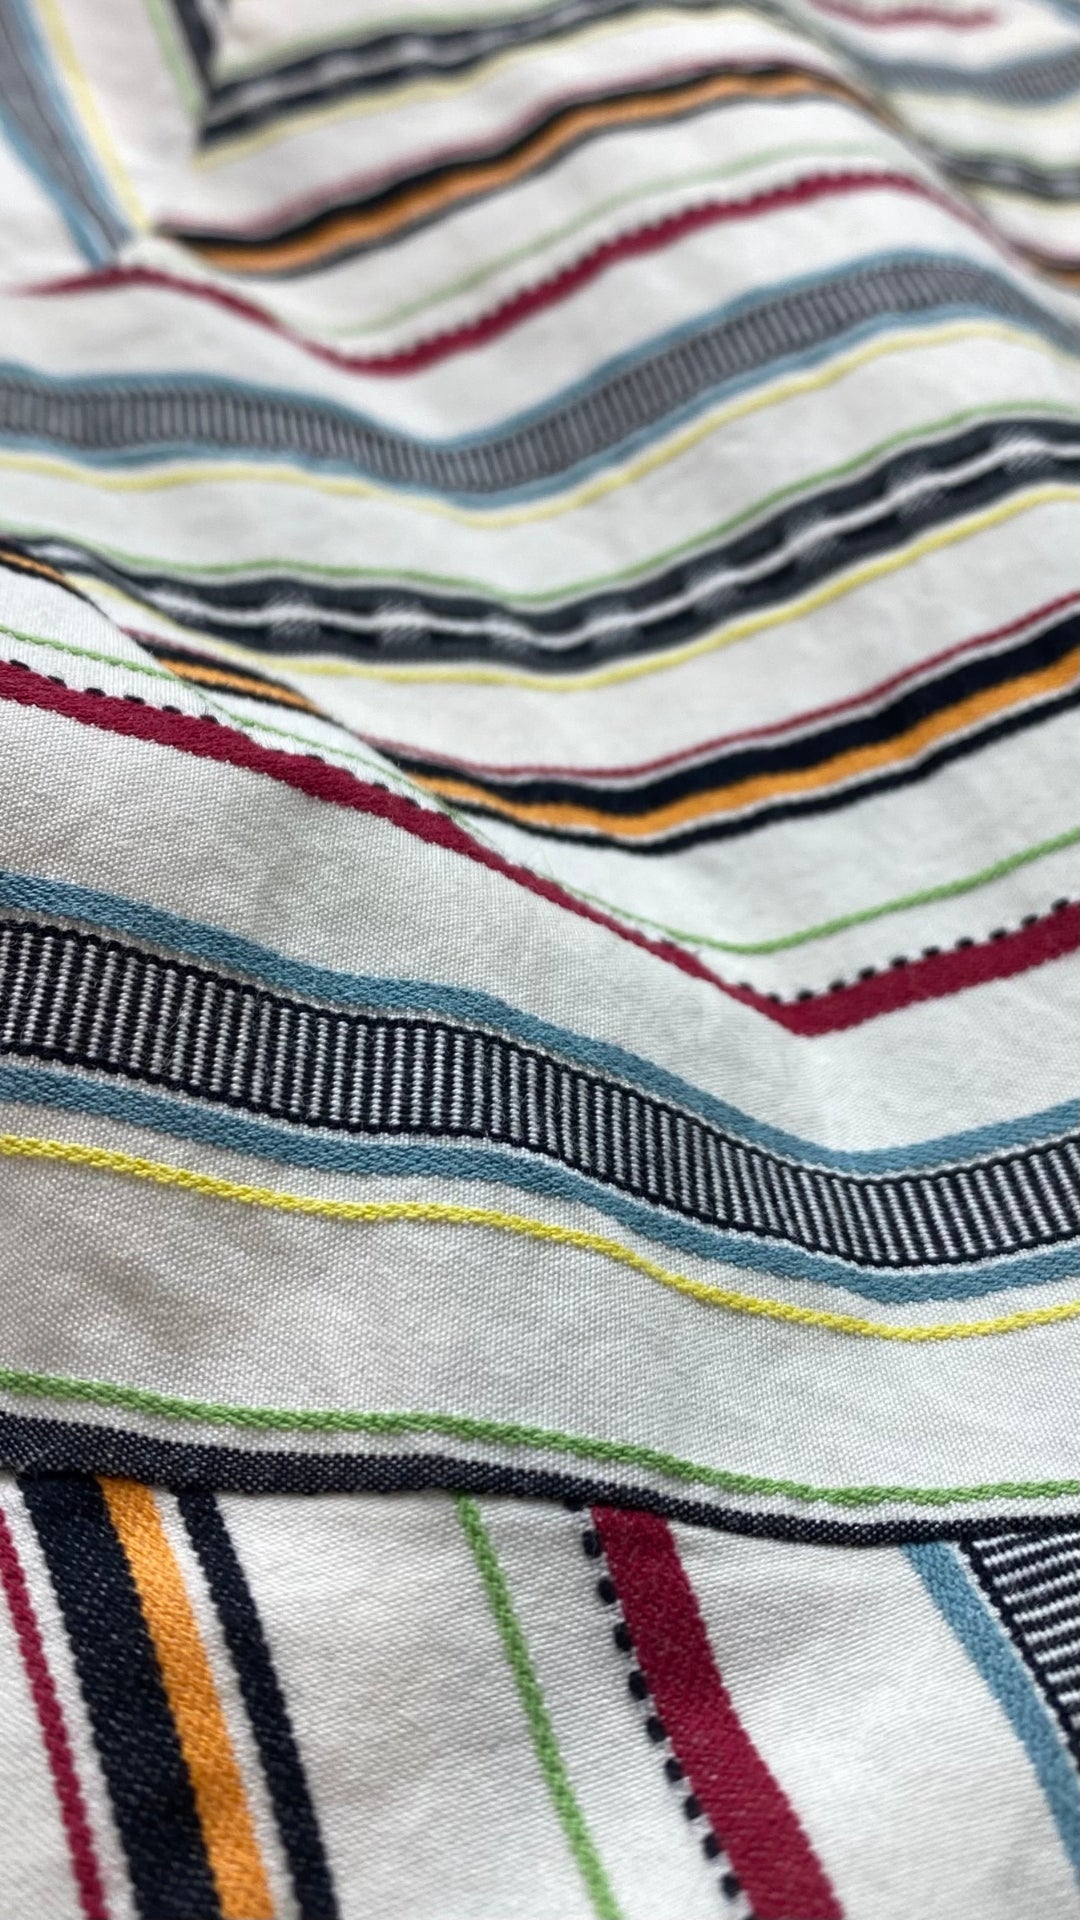 Robe à rayures multicolores Saturday par Kate Spade, taille 00 (xxs/xs). Vue de près du tissu.